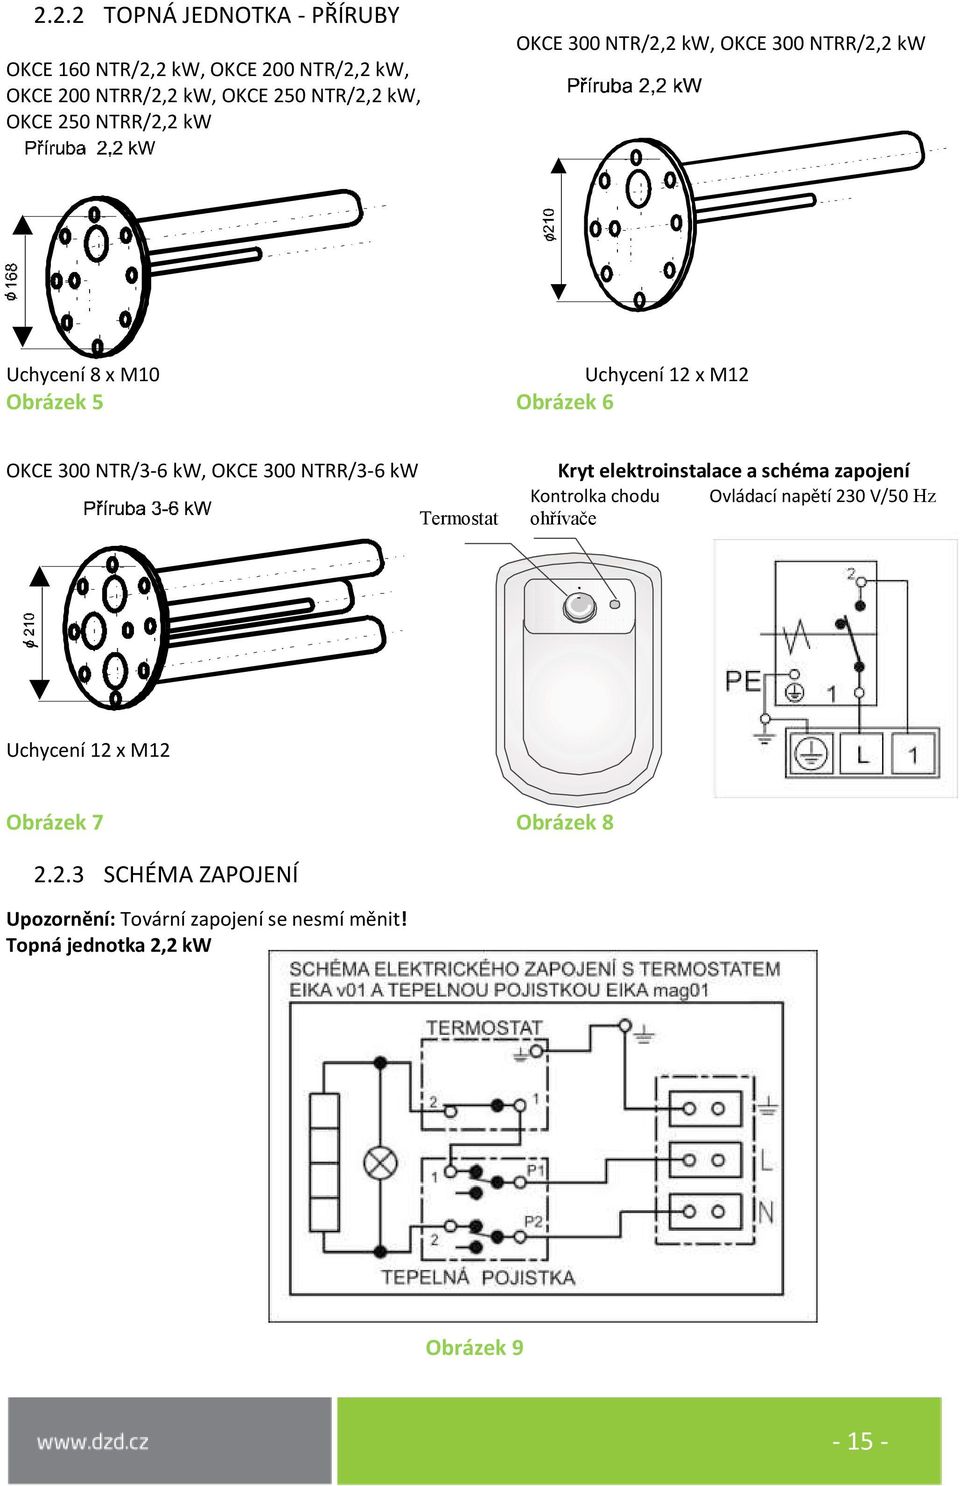 OKCE 300 NTRR/3-6 kw Termostat Kryt elektroinstalace a schéma zapojení Kontrolka chodu Ovládací napětí 230 V/50 Hz ohřívače